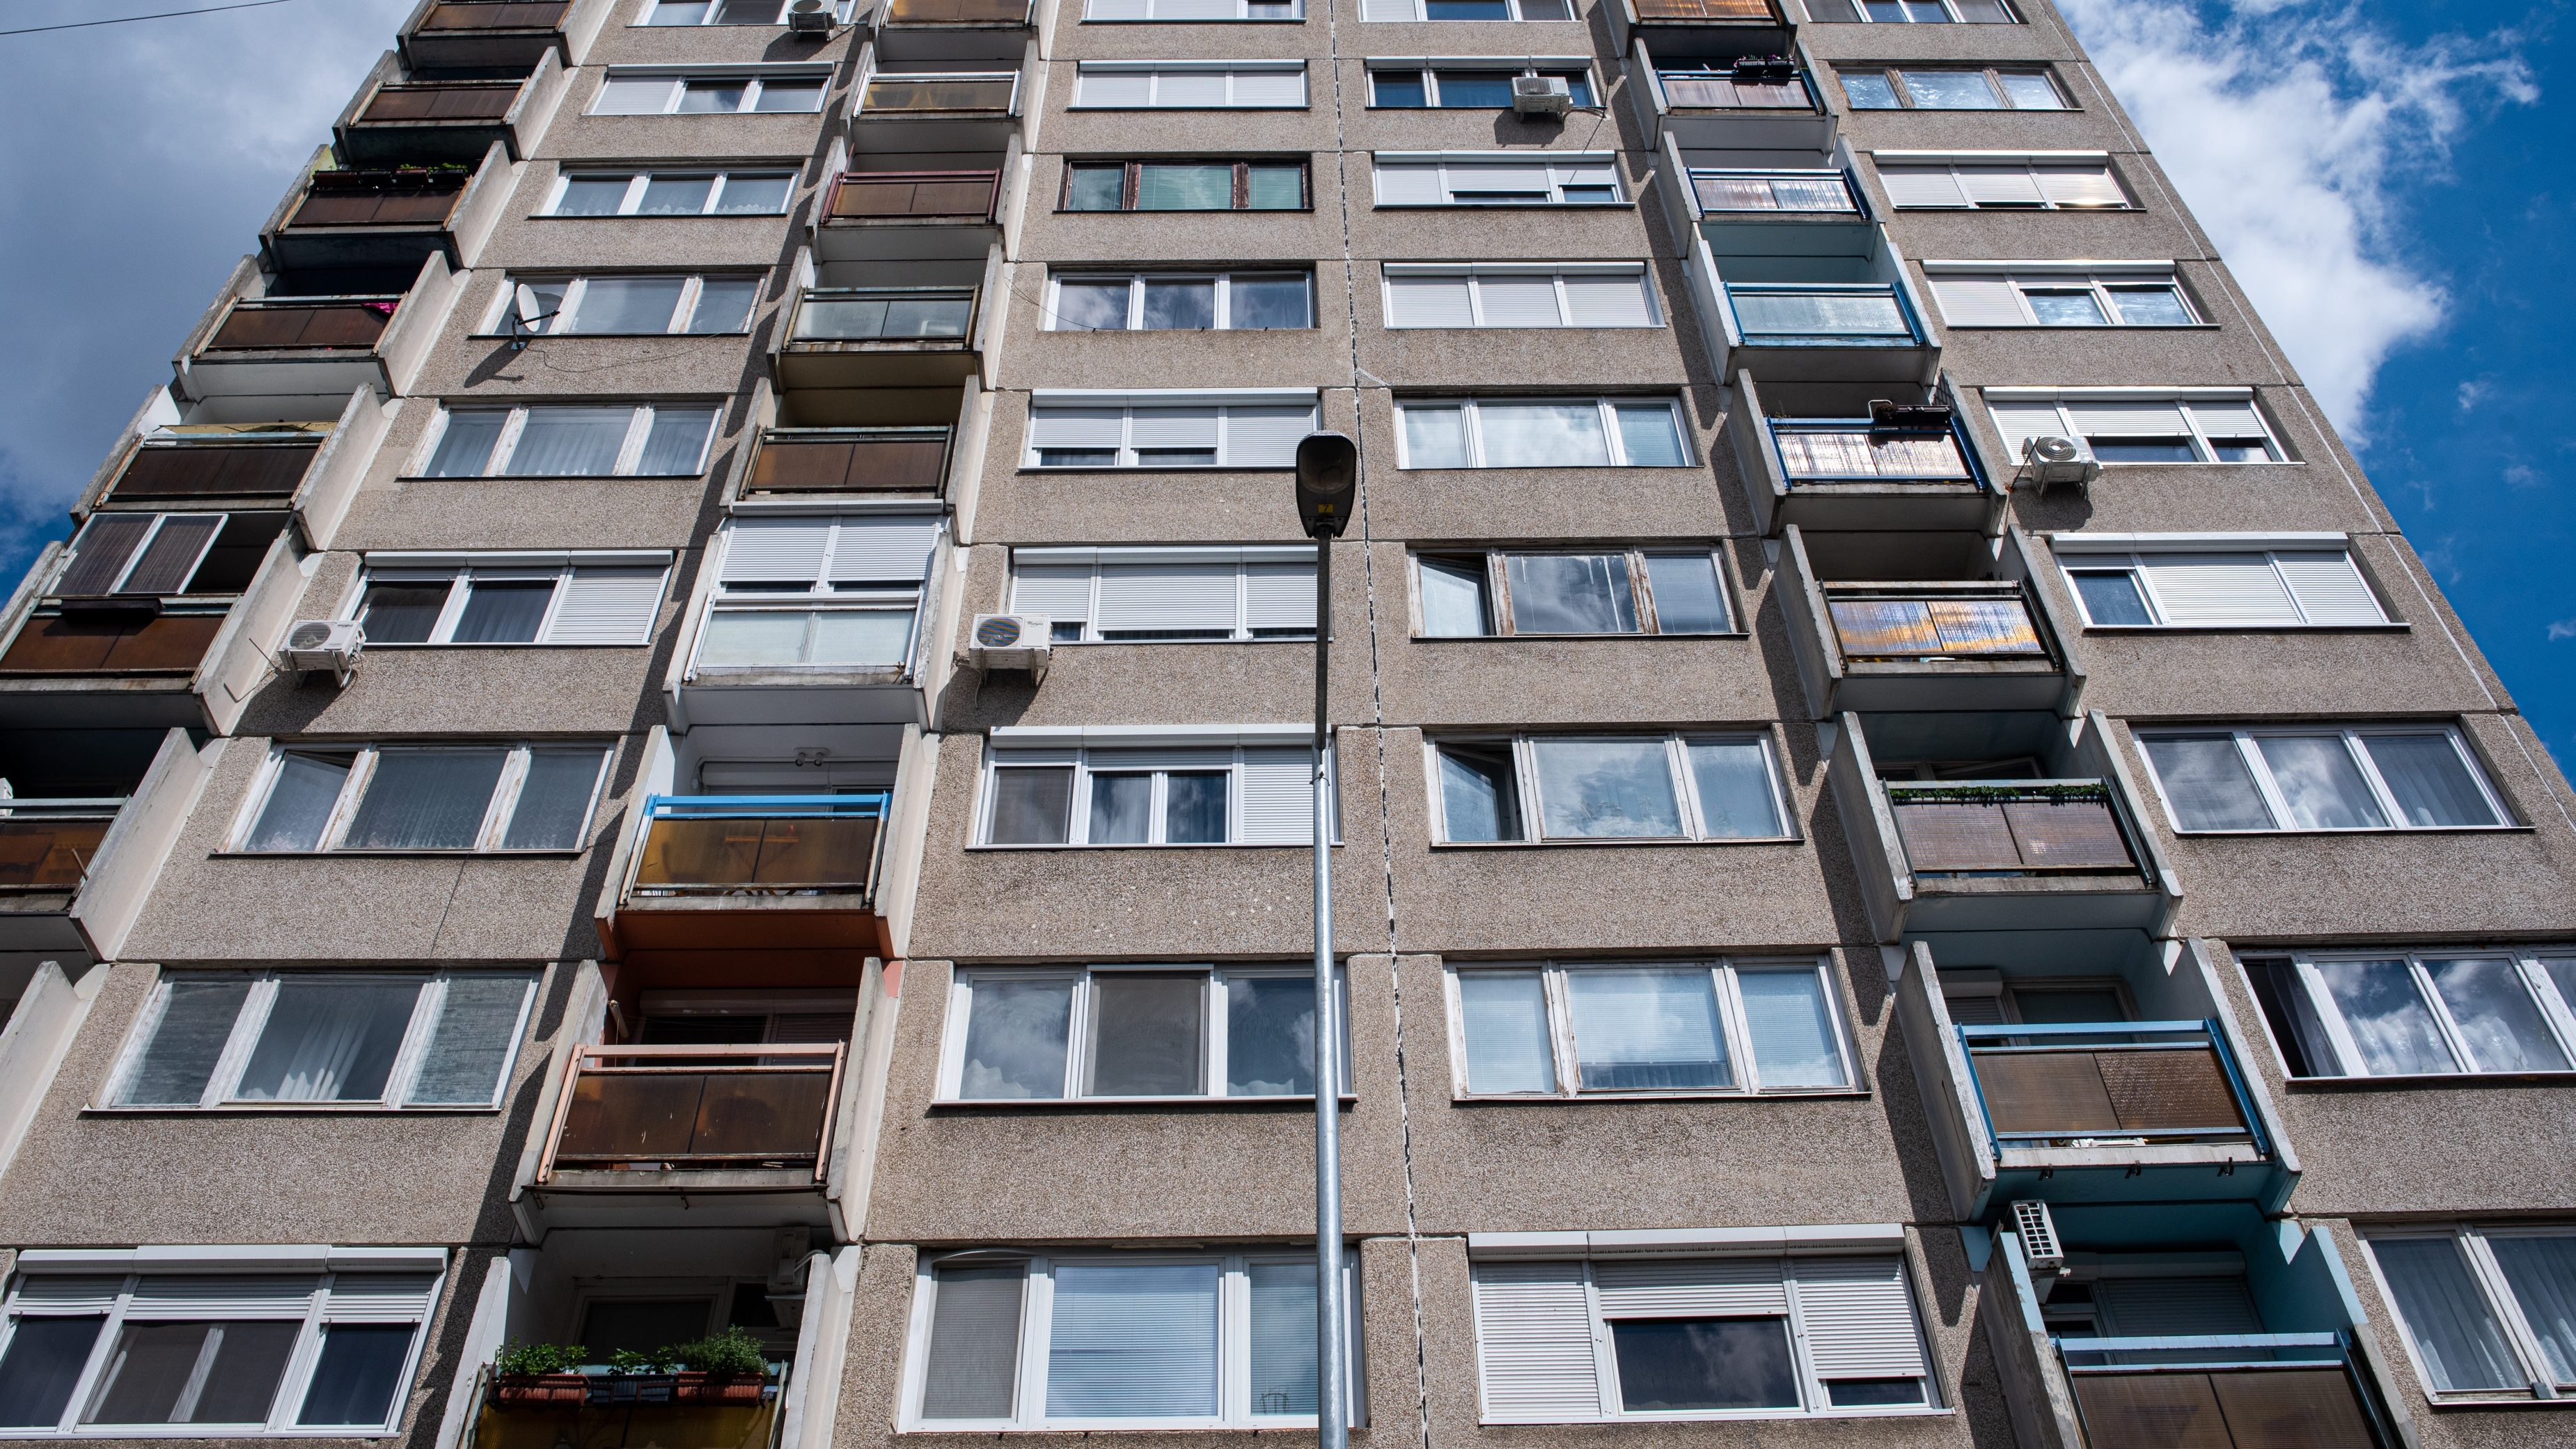 Ukrajnai lakáskeresők, és ukrán érdekeltségű vállalkozások miatt lőtt ki a budapesti albérletek ára